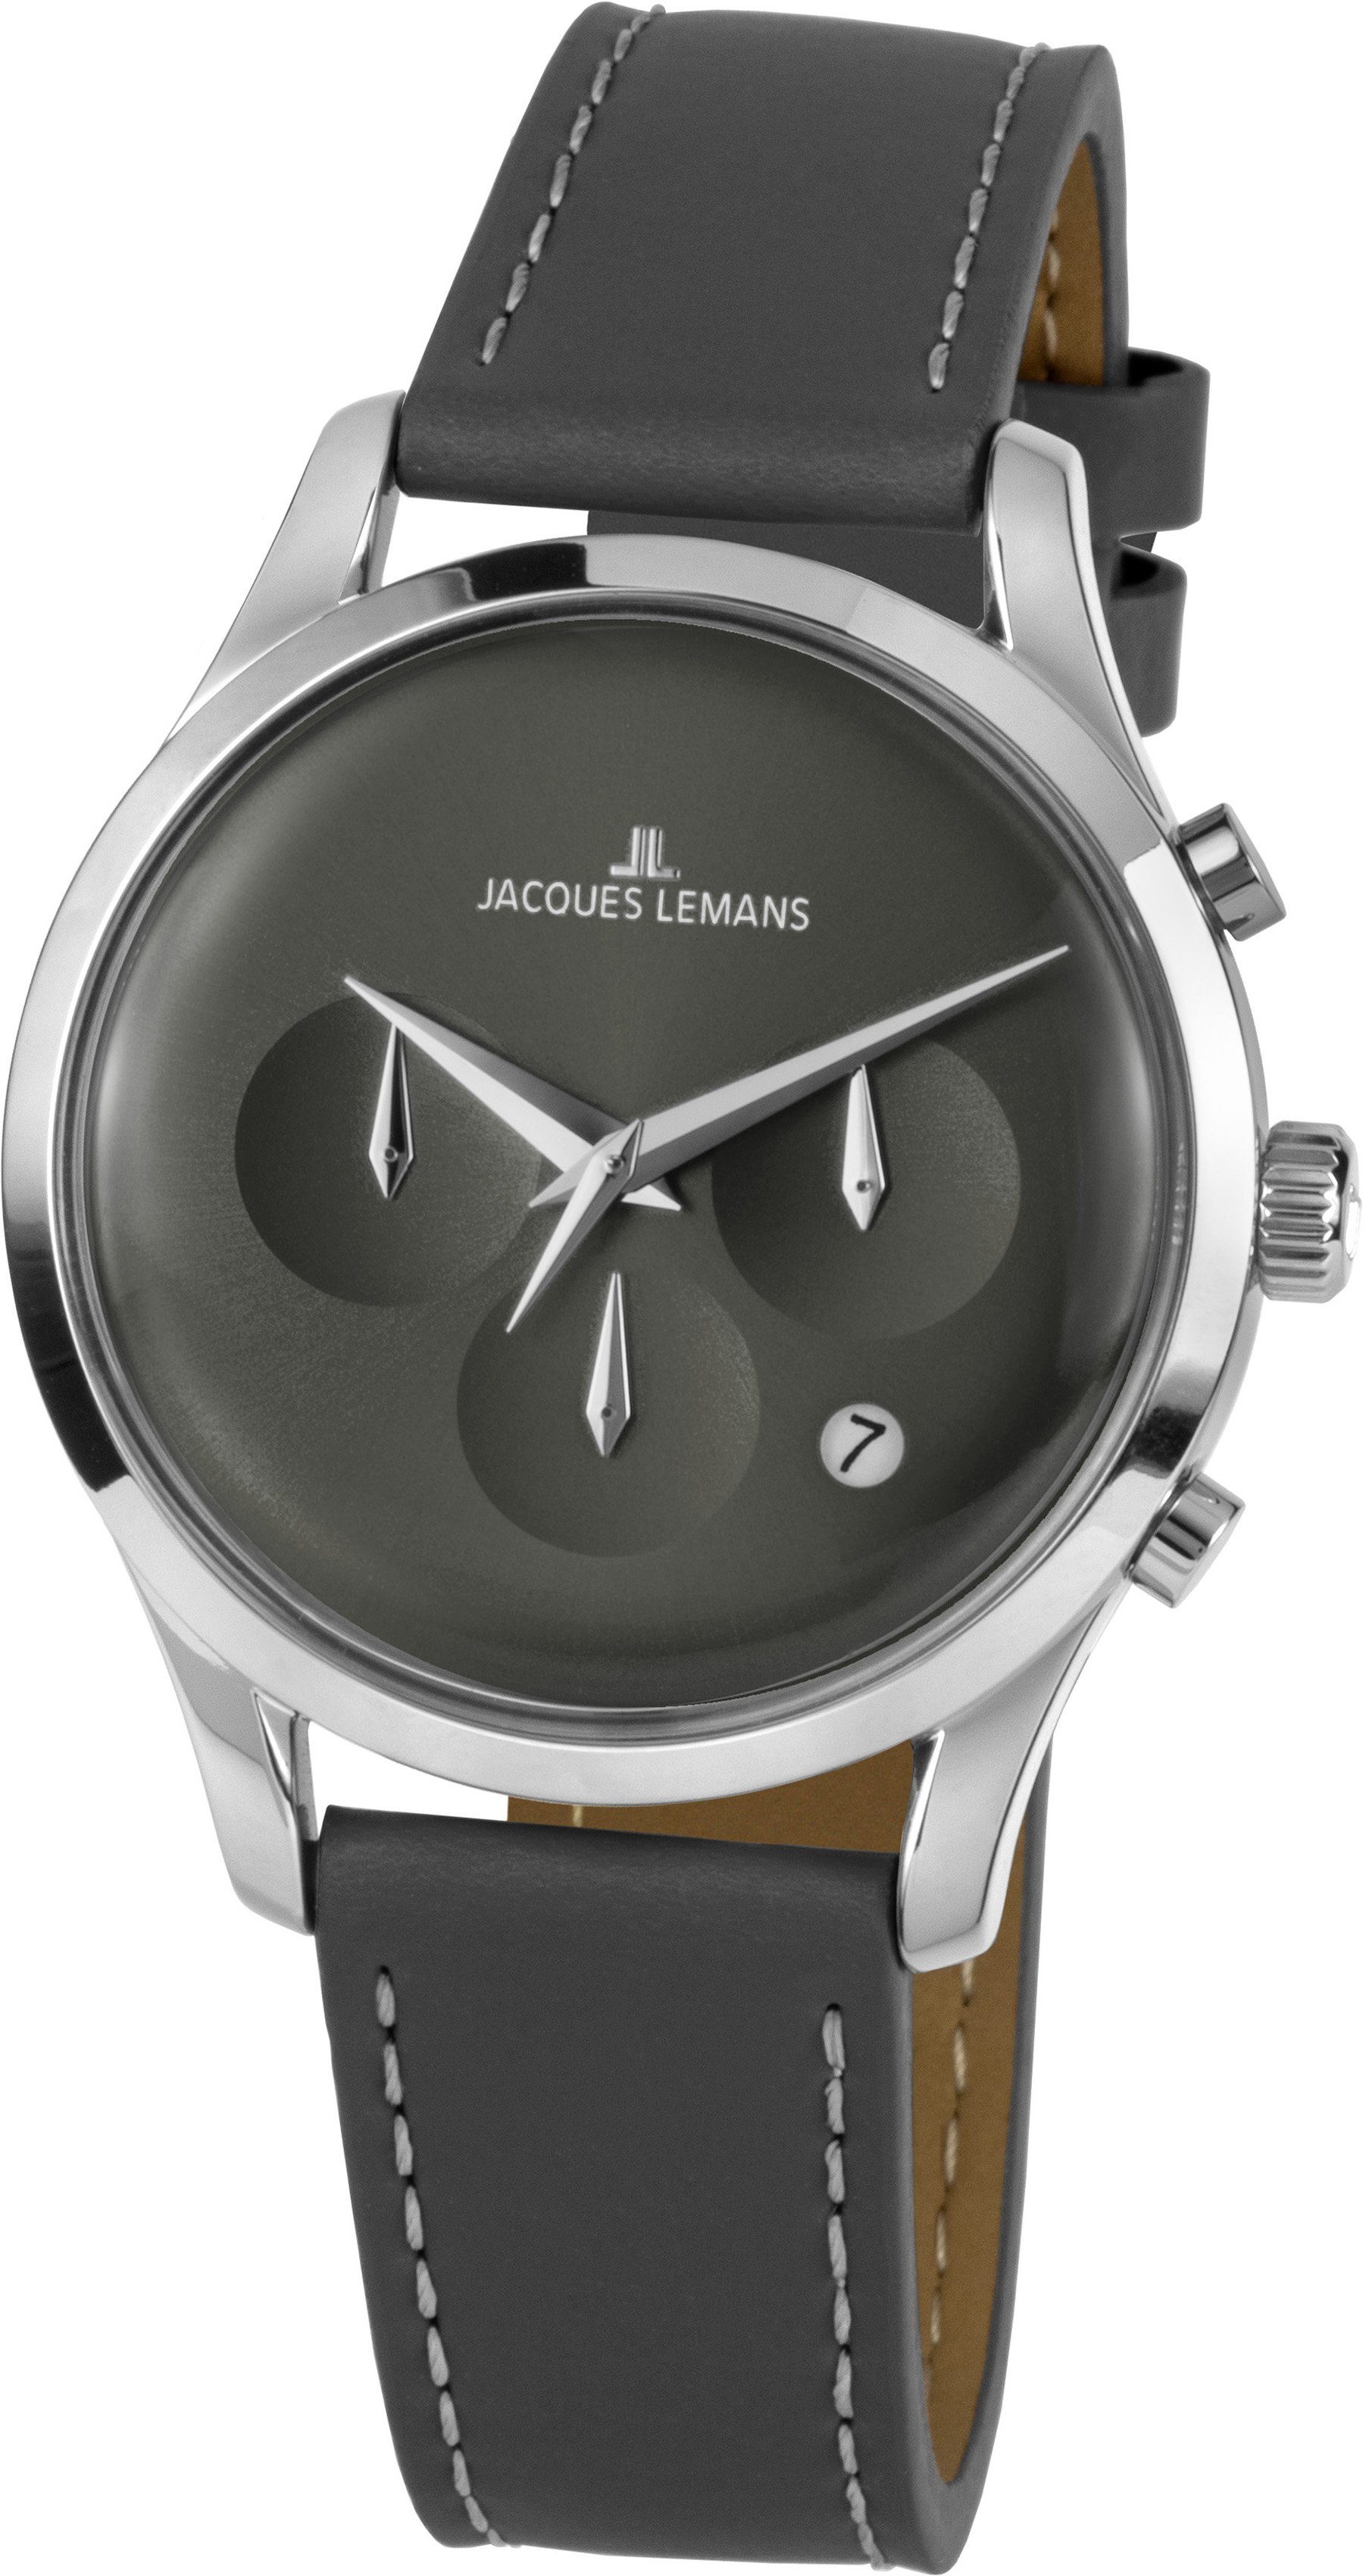 Jacques Lemans Chronograph Retro Classic, 1-2067A, Quarzuhr, Armbanduhr, Herrenuhr, Datum, Stoppfunktion